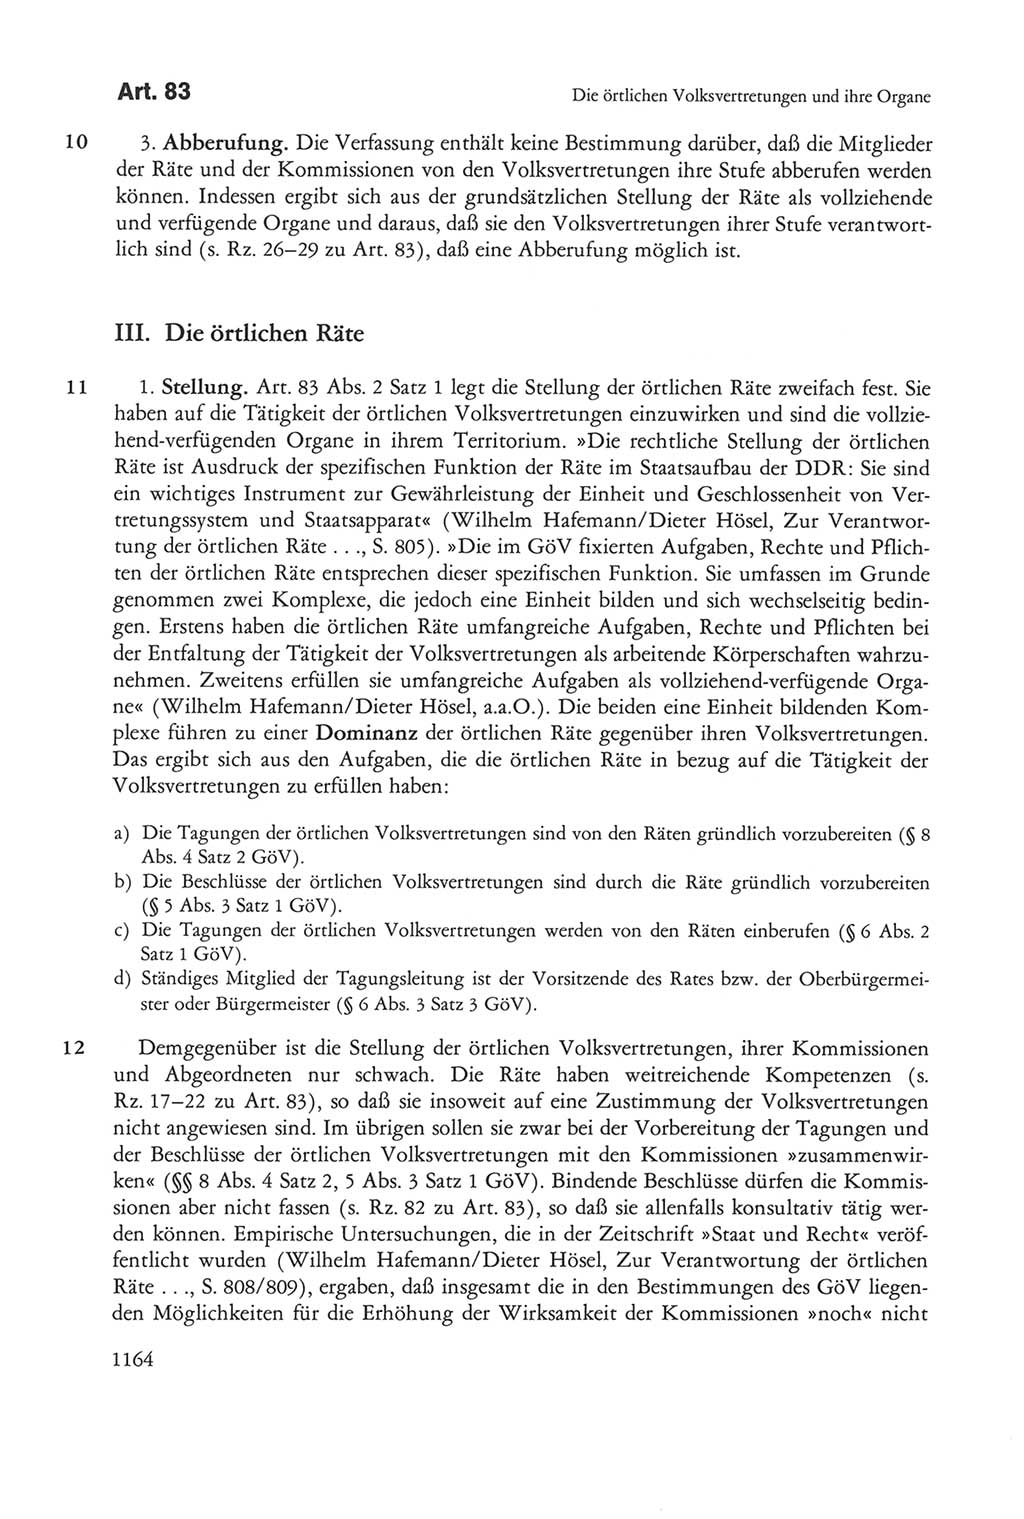 Die sozialistische Verfassung der Deutschen Demokratischen Republik (DDR), Kommentar mit einem Nachtrag 1997, Seite 1164 (Soz. Verf. DDR Komm. Nachtr. 1997, S. 1164)